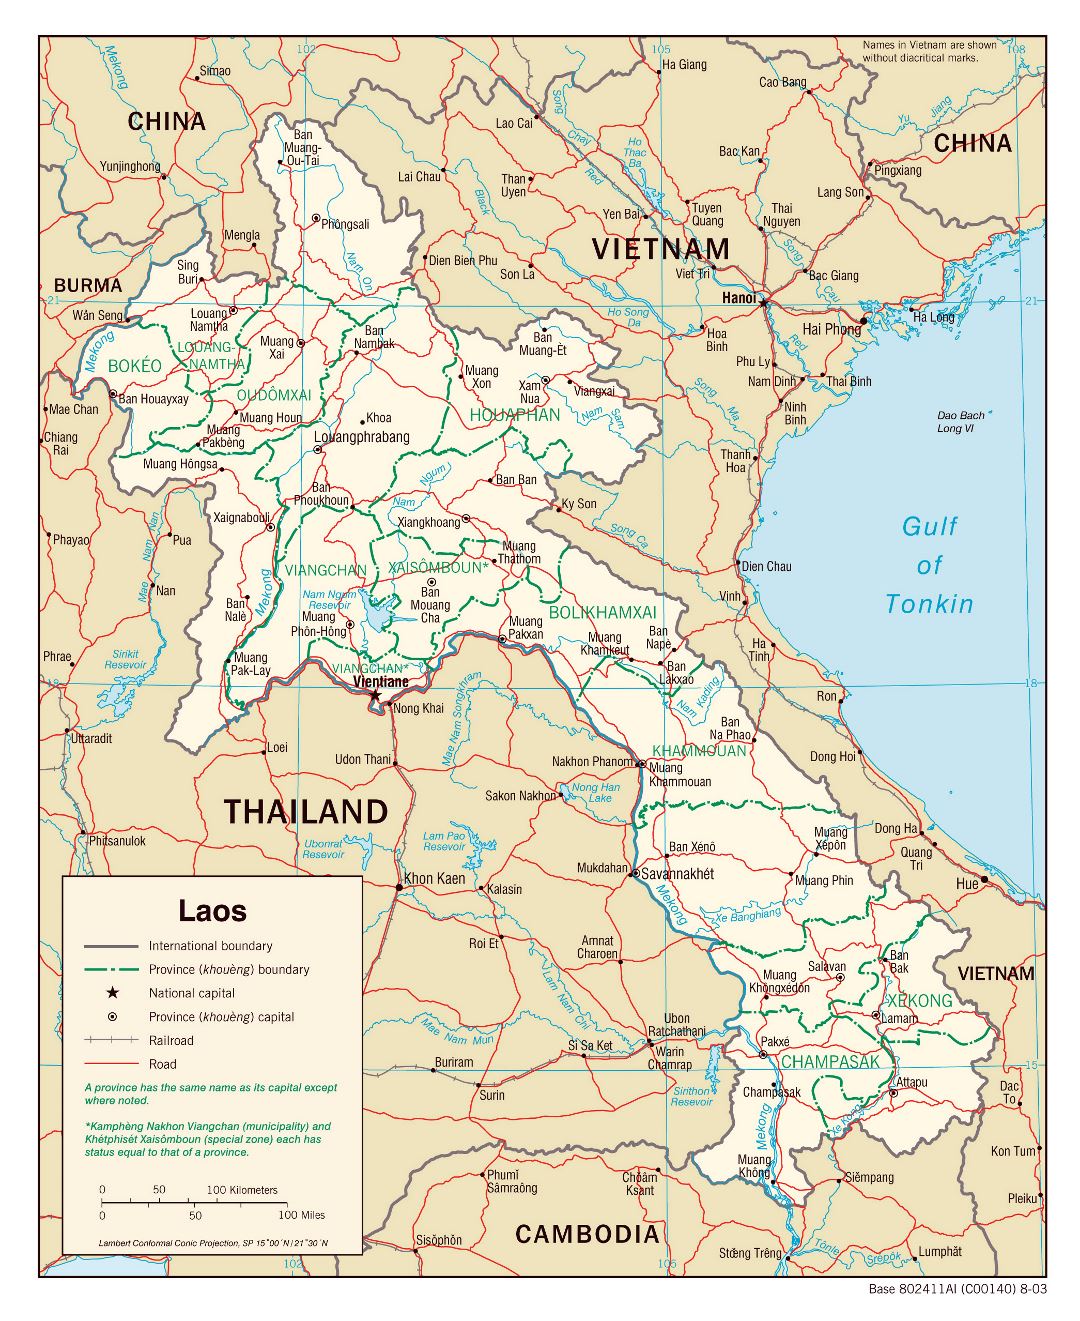 Большая политическая и административная карта Лаоса с дорогами, железными дорогами и крупными городами - 2003